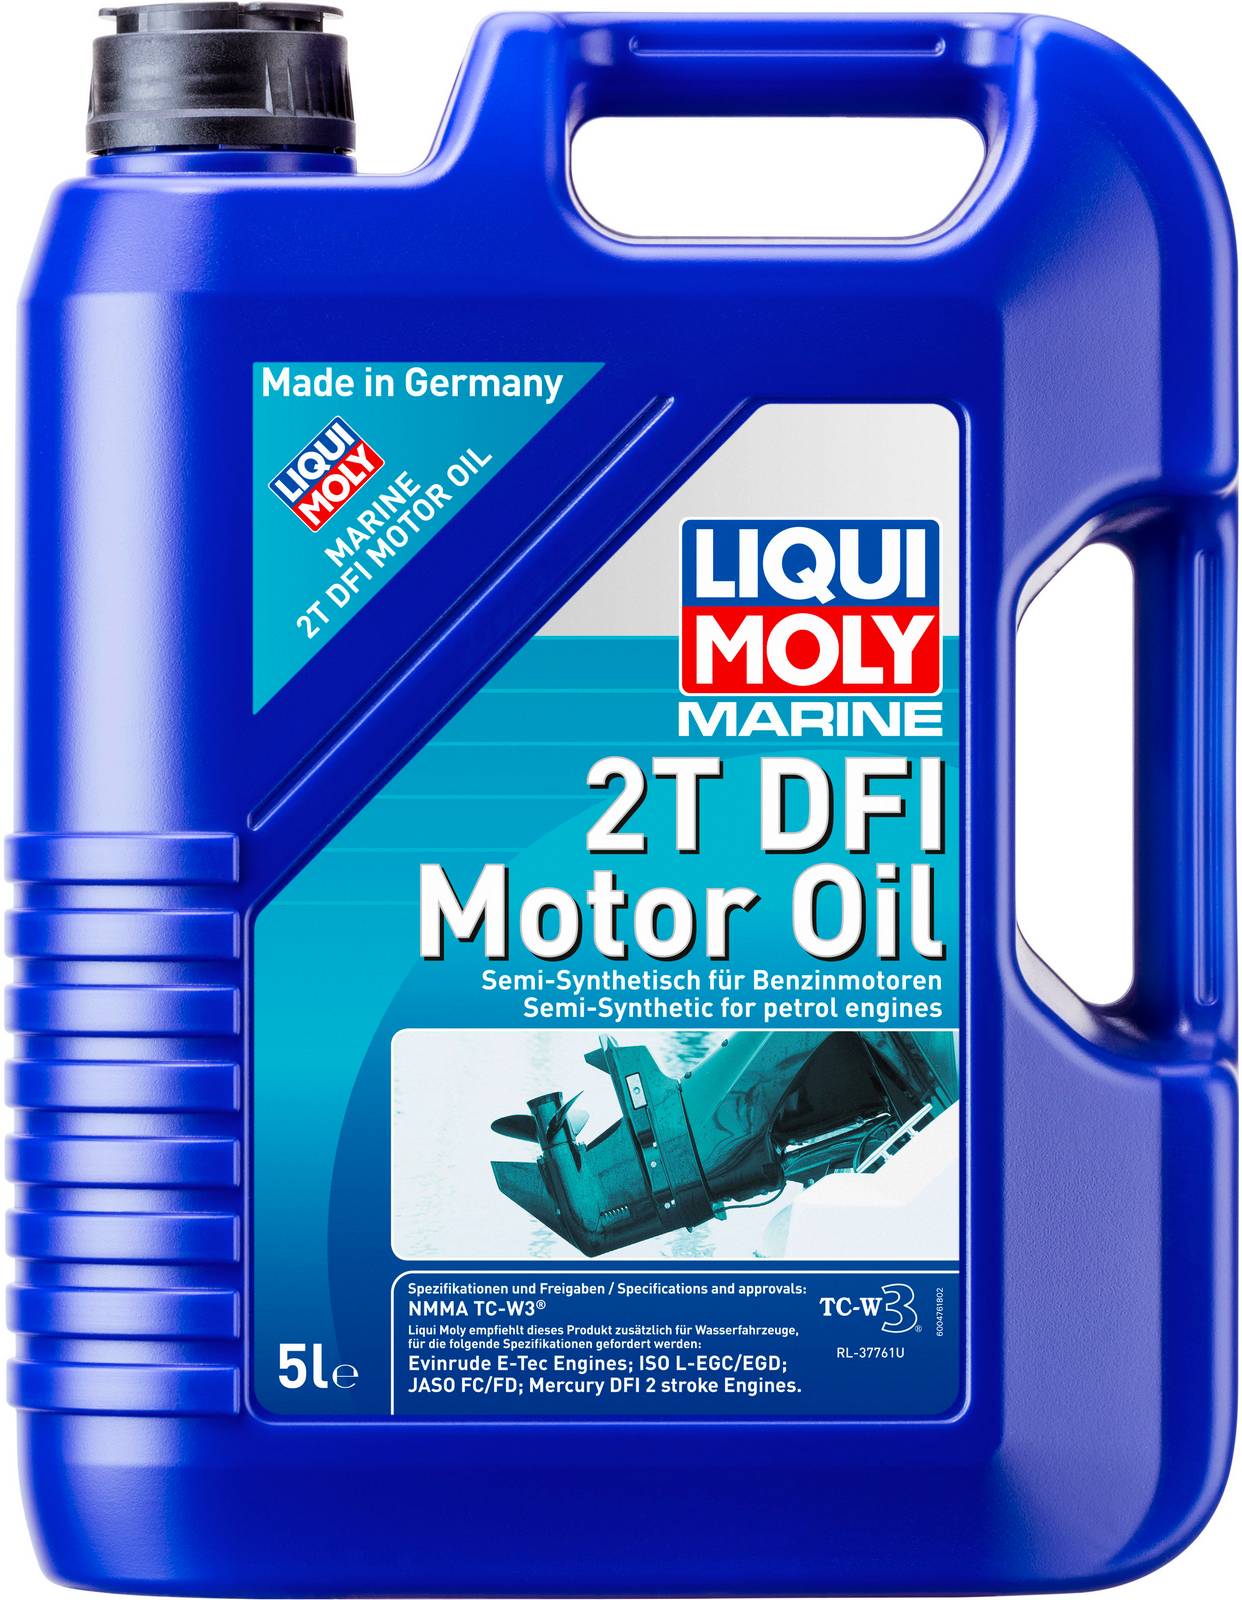 АВТОМАСЛА Моторное масло для водной техники Liqui Moly Marine 2T DFI Motor Oil 5л + трансмиссионное масло Marine Gear Oil 80W-90 0,25л в Подарок